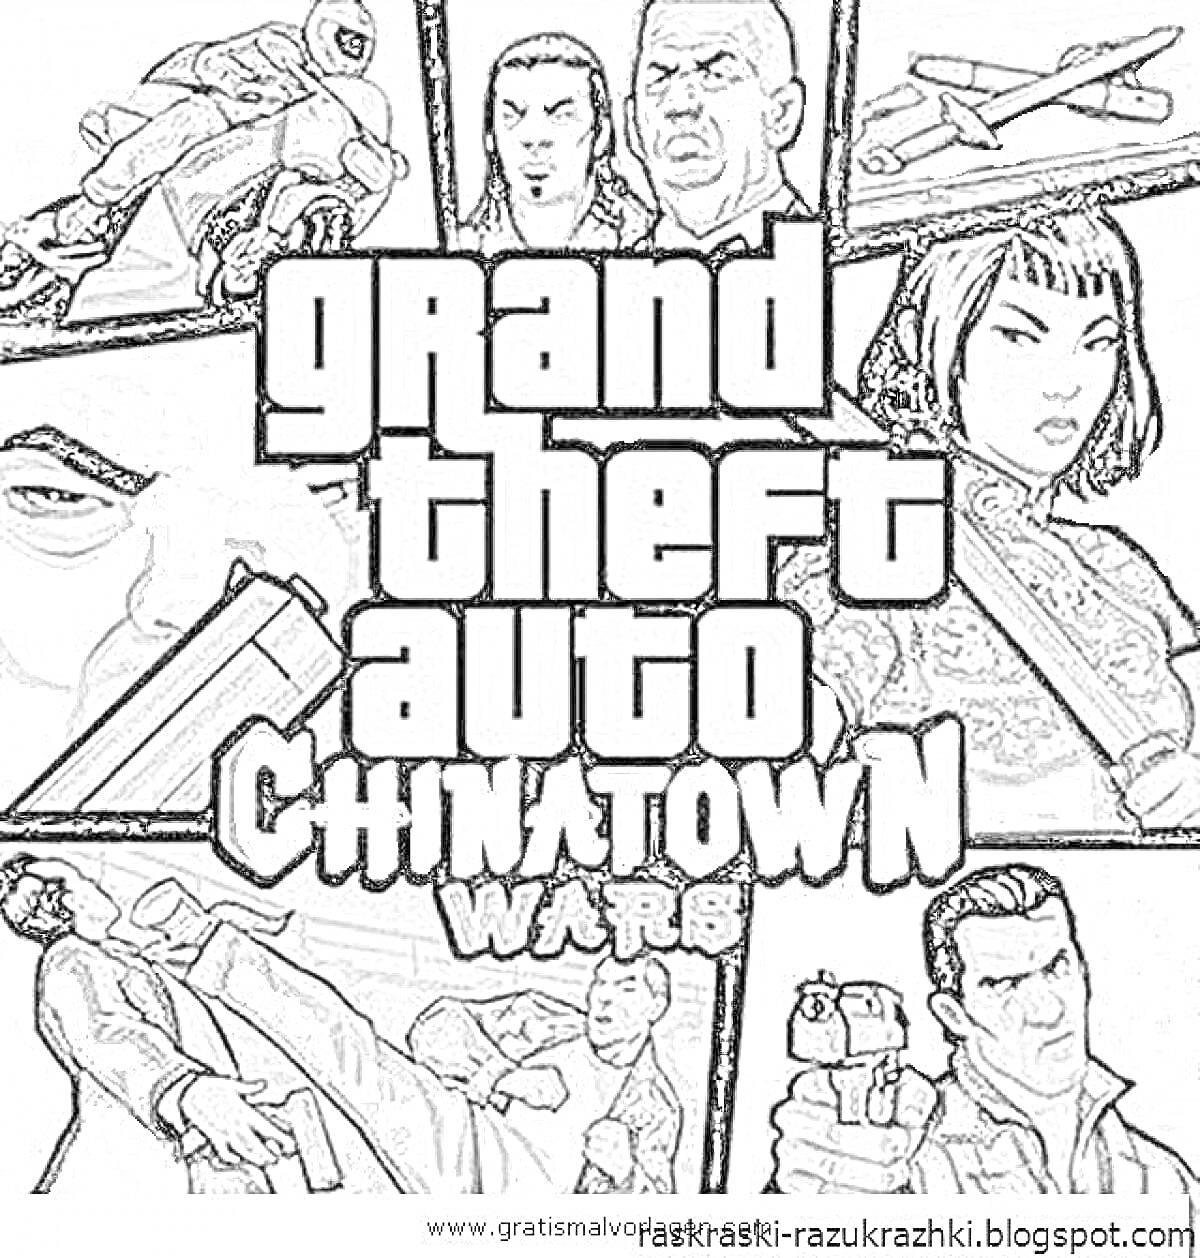 Раскраска Grand Theft Auto Chinatown Wars с изображением сцены с наездником на мотоцикле, автомобильной погони и различных персонажей